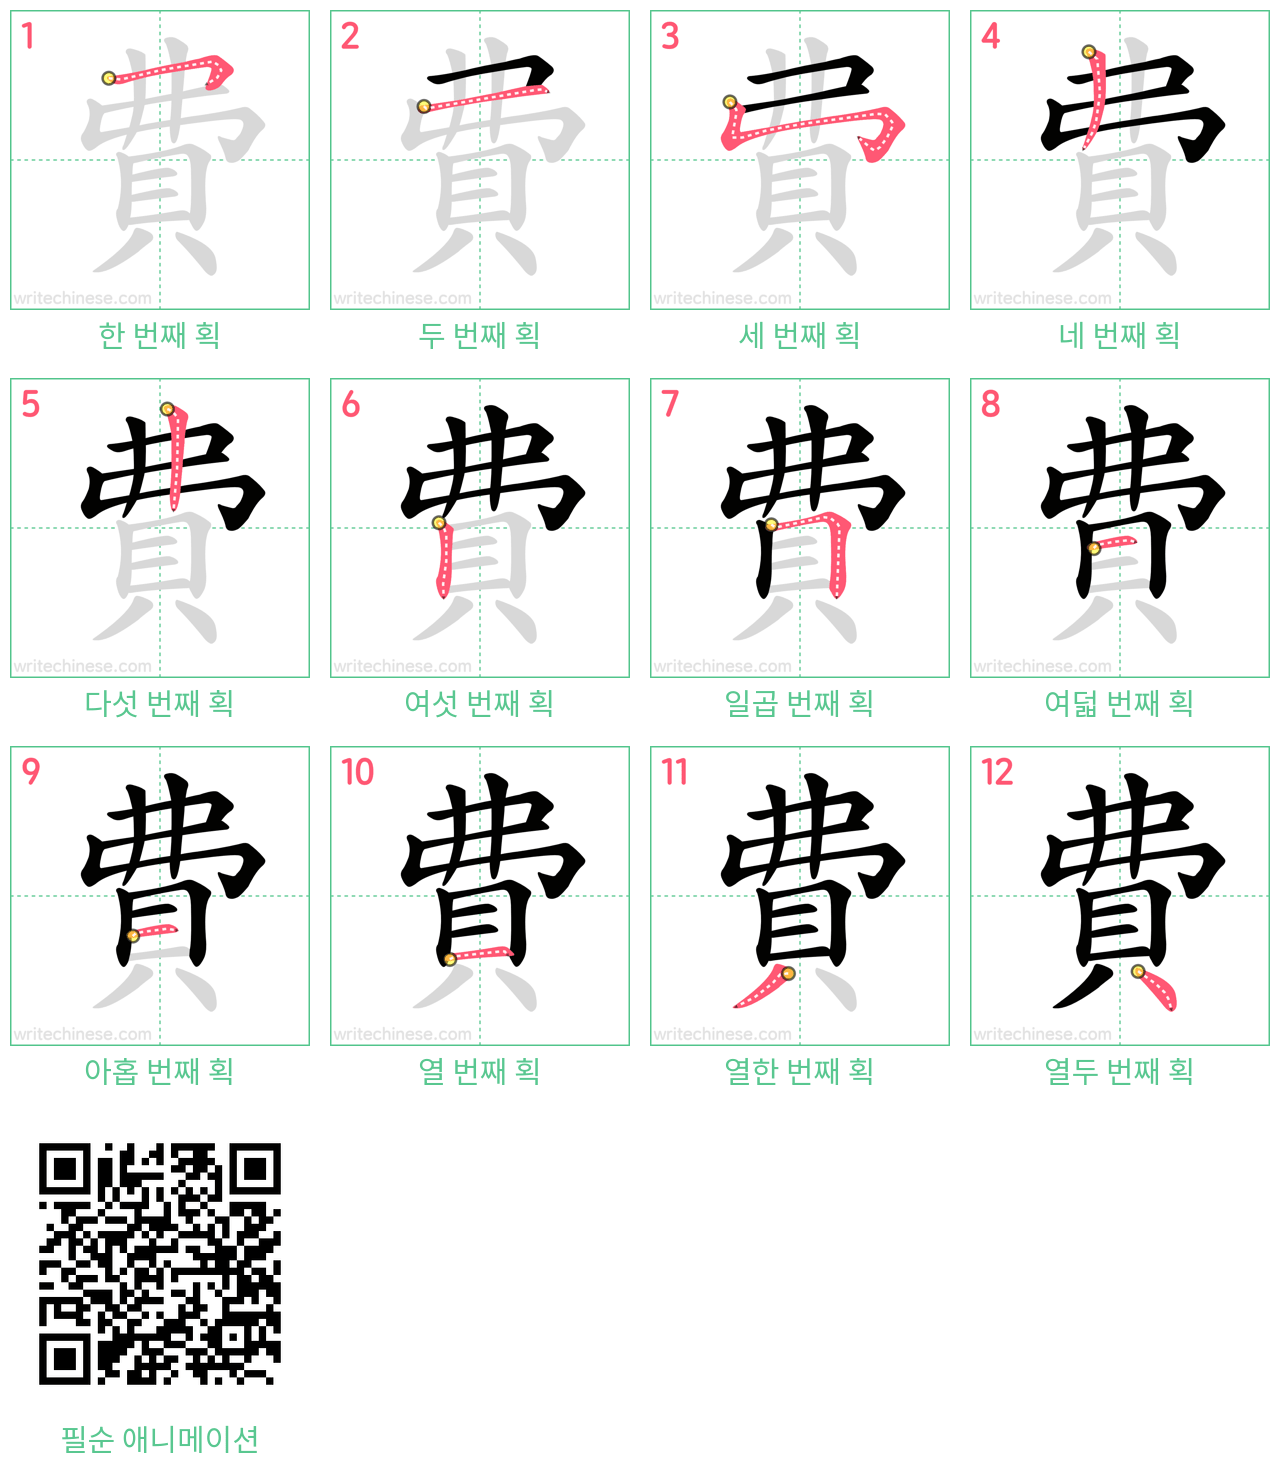 費 step-by-step stroke order diagrams